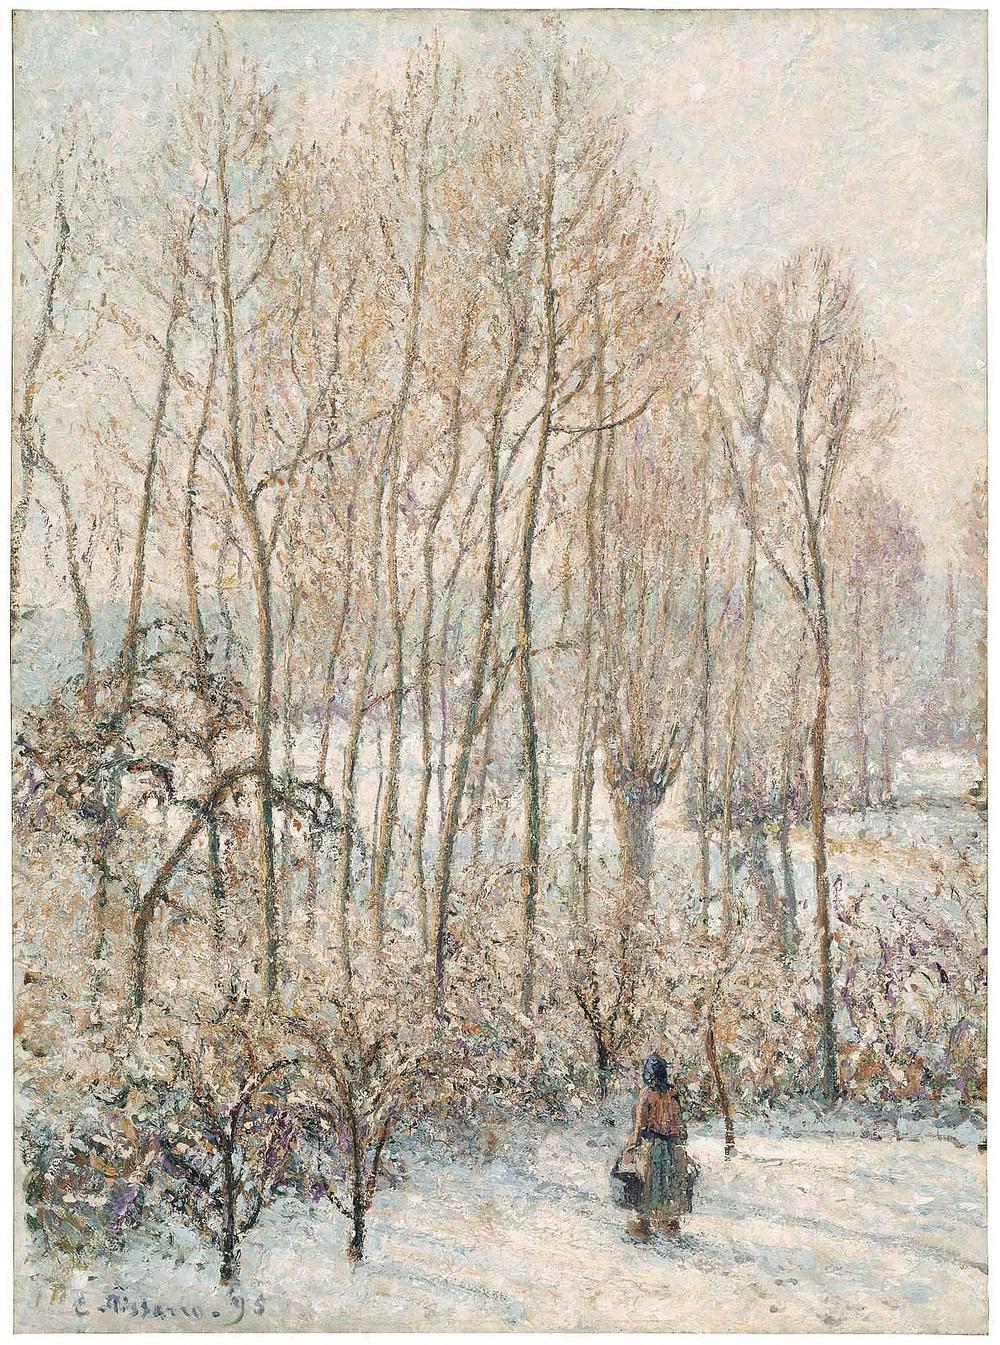 Camille Pissarro, <em>Morning Sunlight on the Snow, Eragny-sur-Epte</em>, 1895